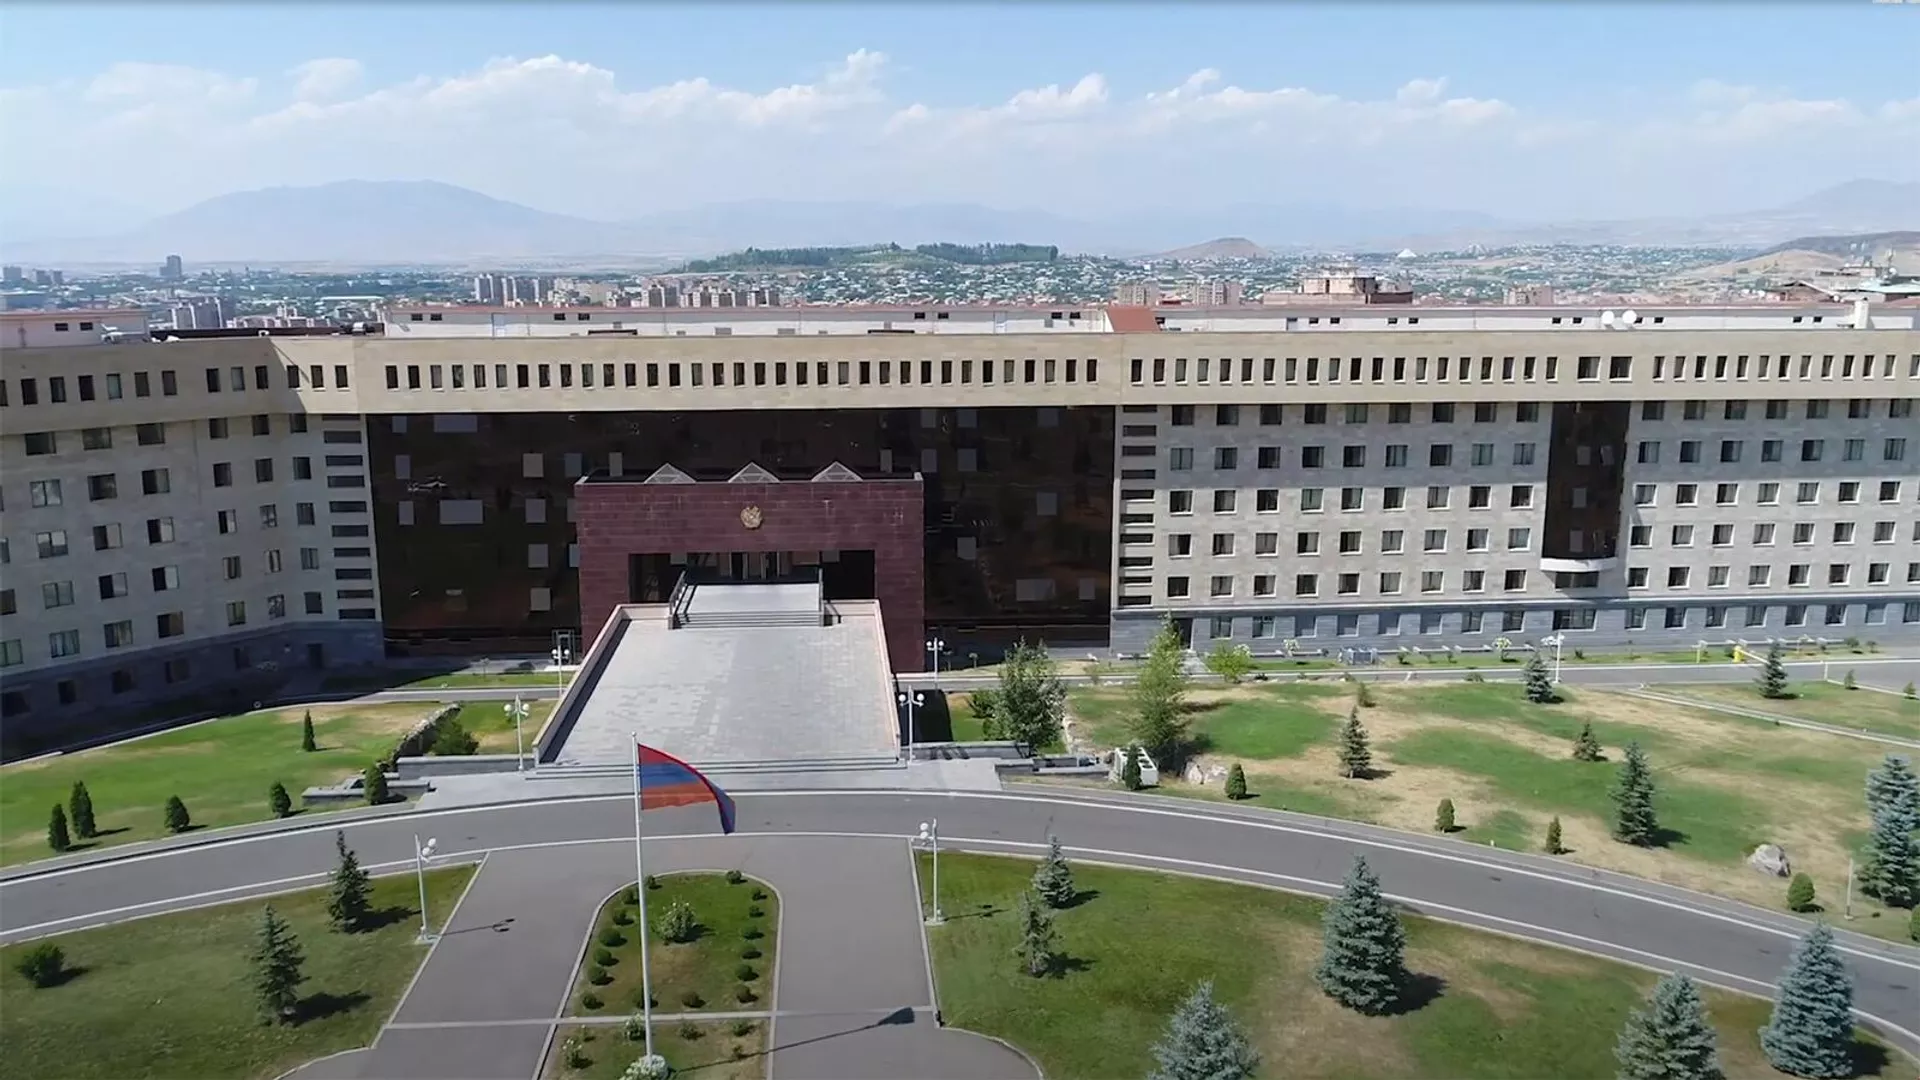 41% капитальных расходов будет направлен на оборону: министр финансов Армении